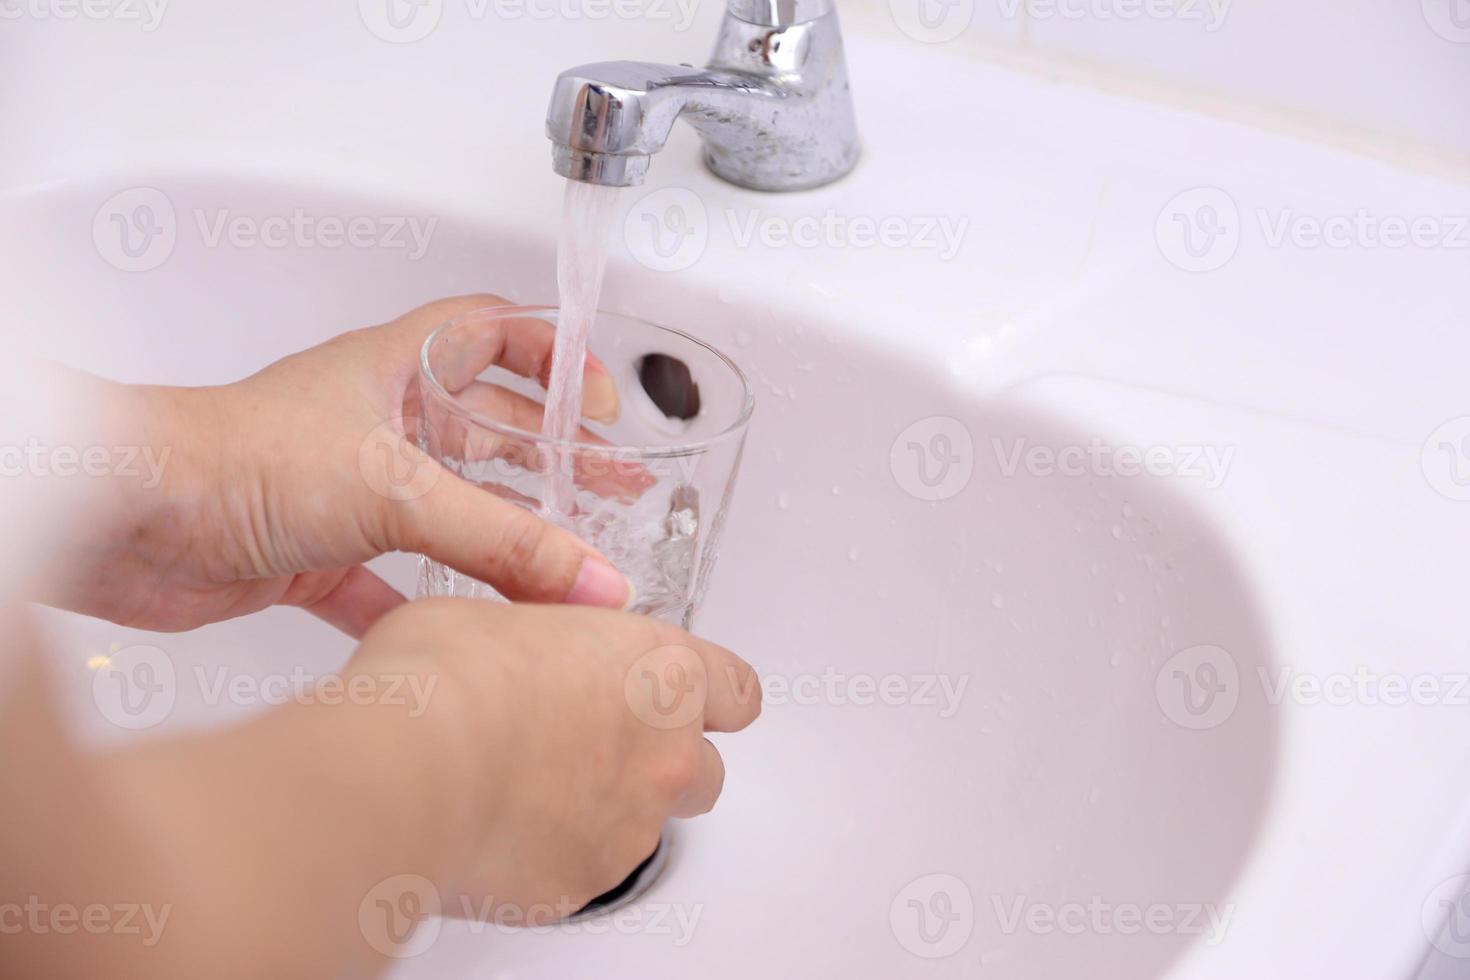 Hand Washing in Washbasin photo